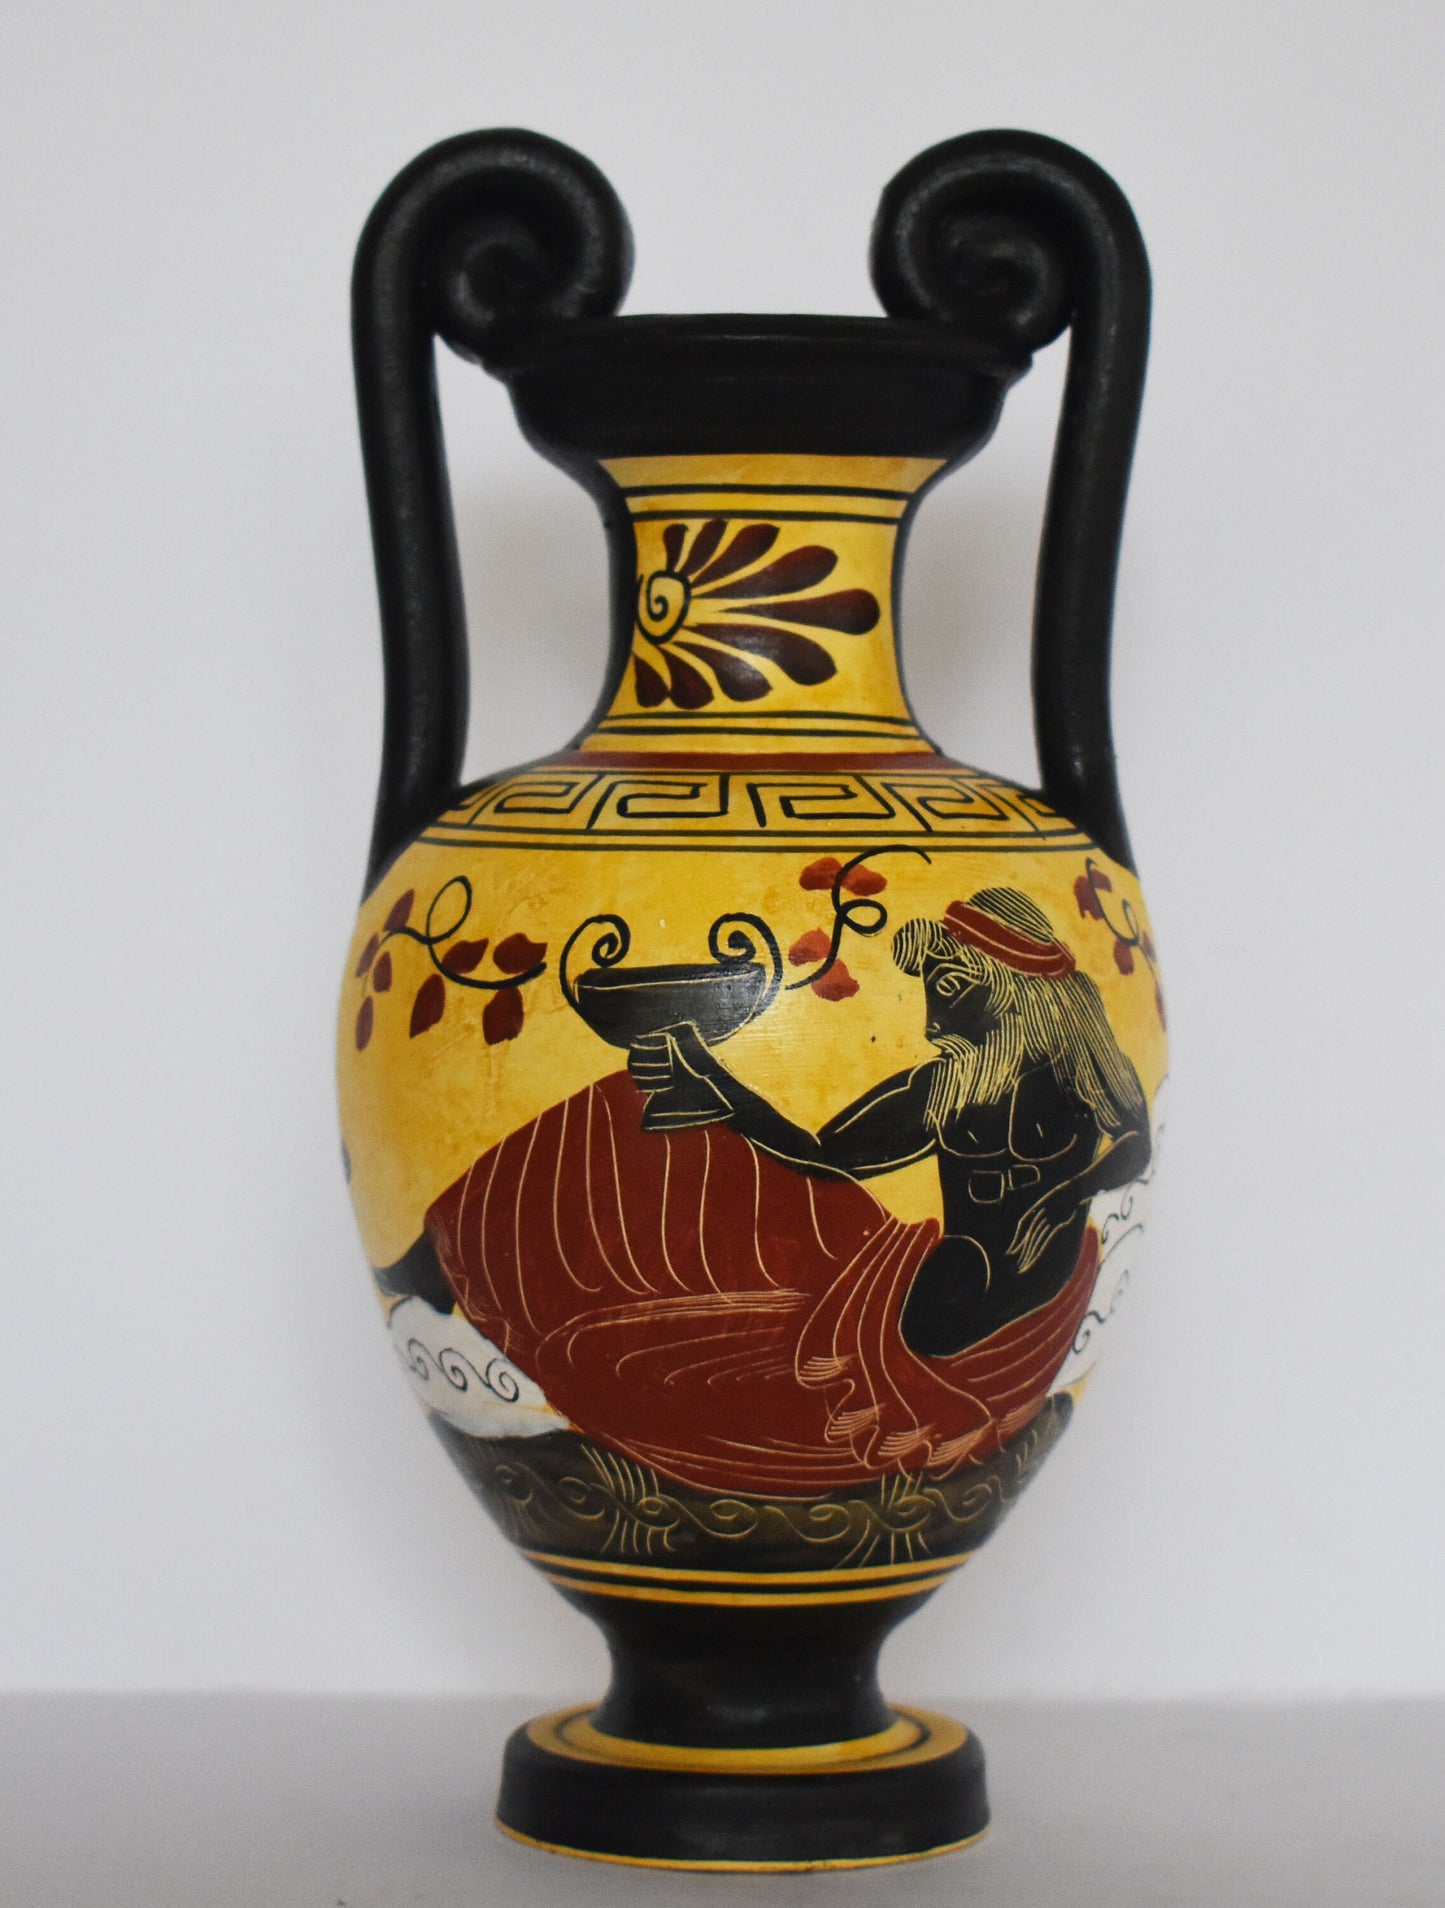 Dionysus Bacchus - Greek Roman God of Wine and Ecstasy - Floral and Meander design - Ceramic Vase